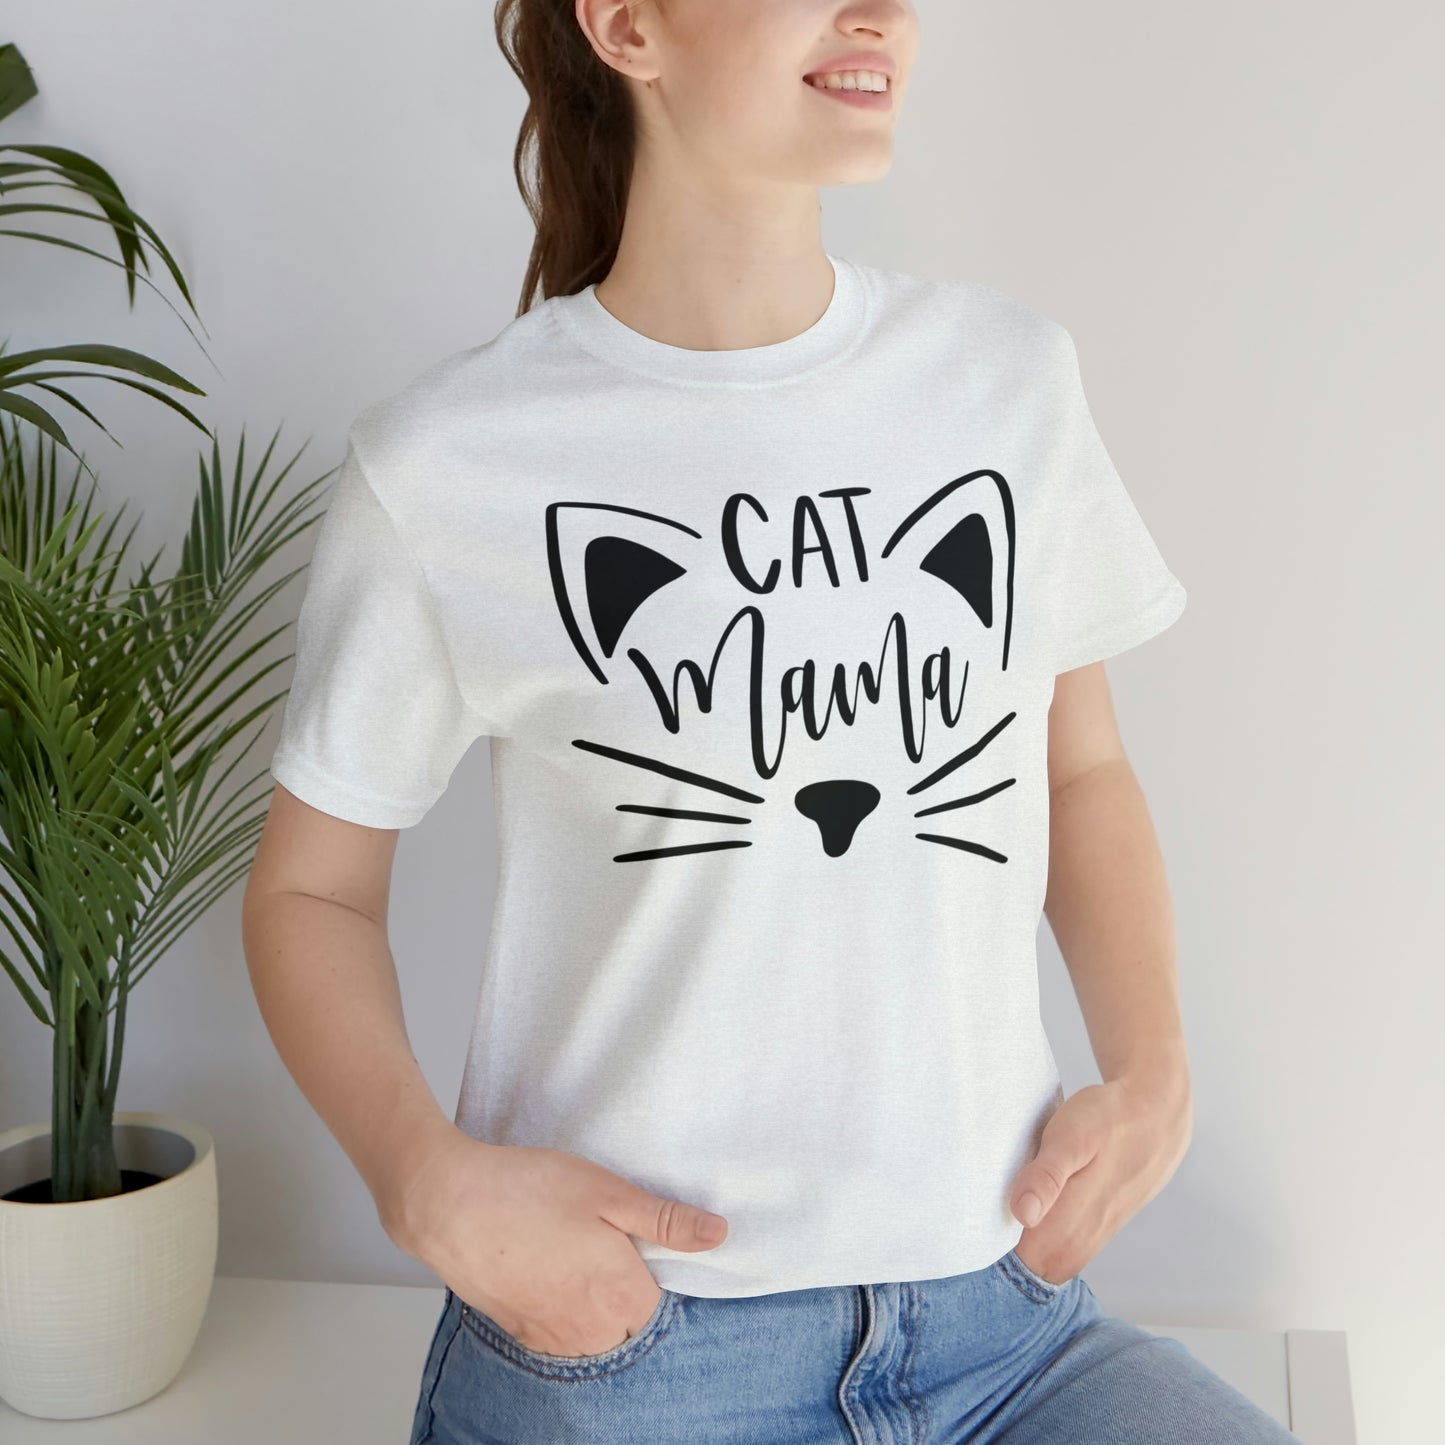 Cat Mama Short Sleeve T-shirt